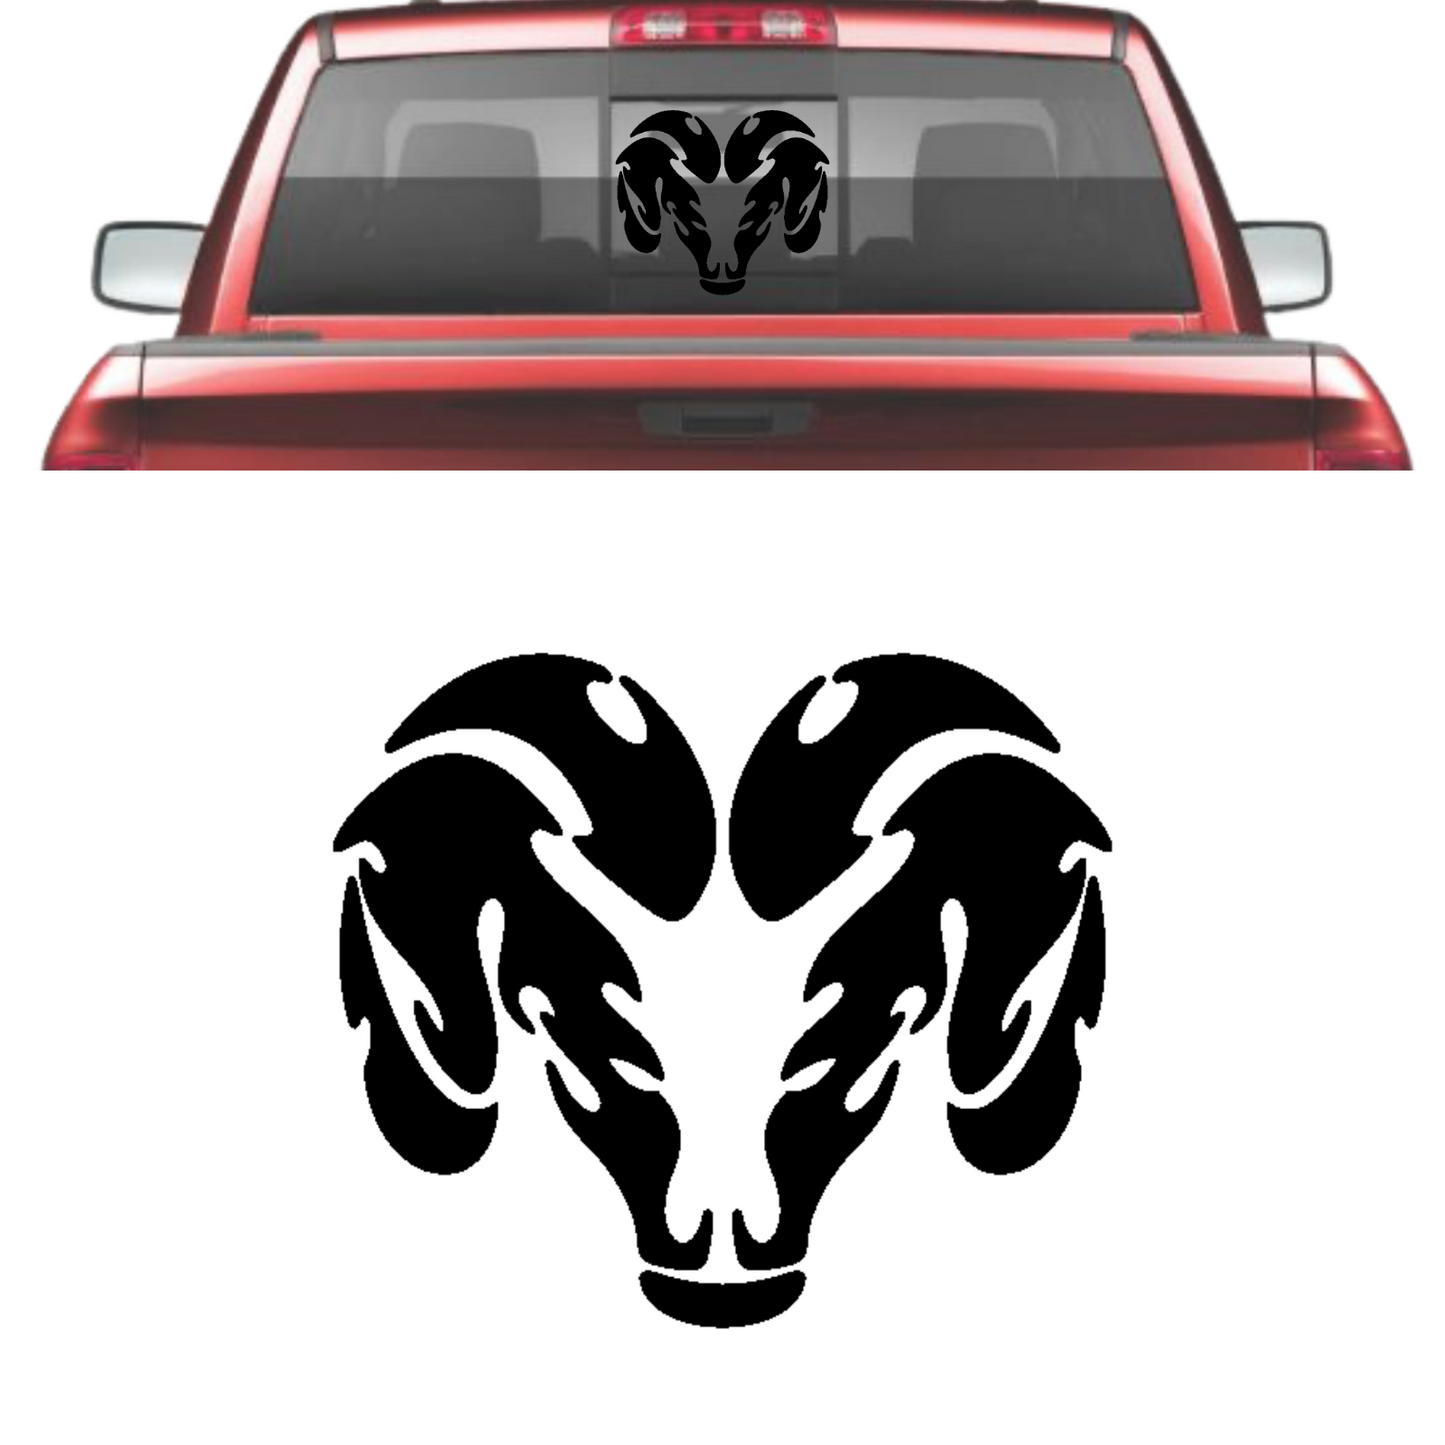 10" Decal Window Sticker Fits: Dodge Ram Diesel Truck